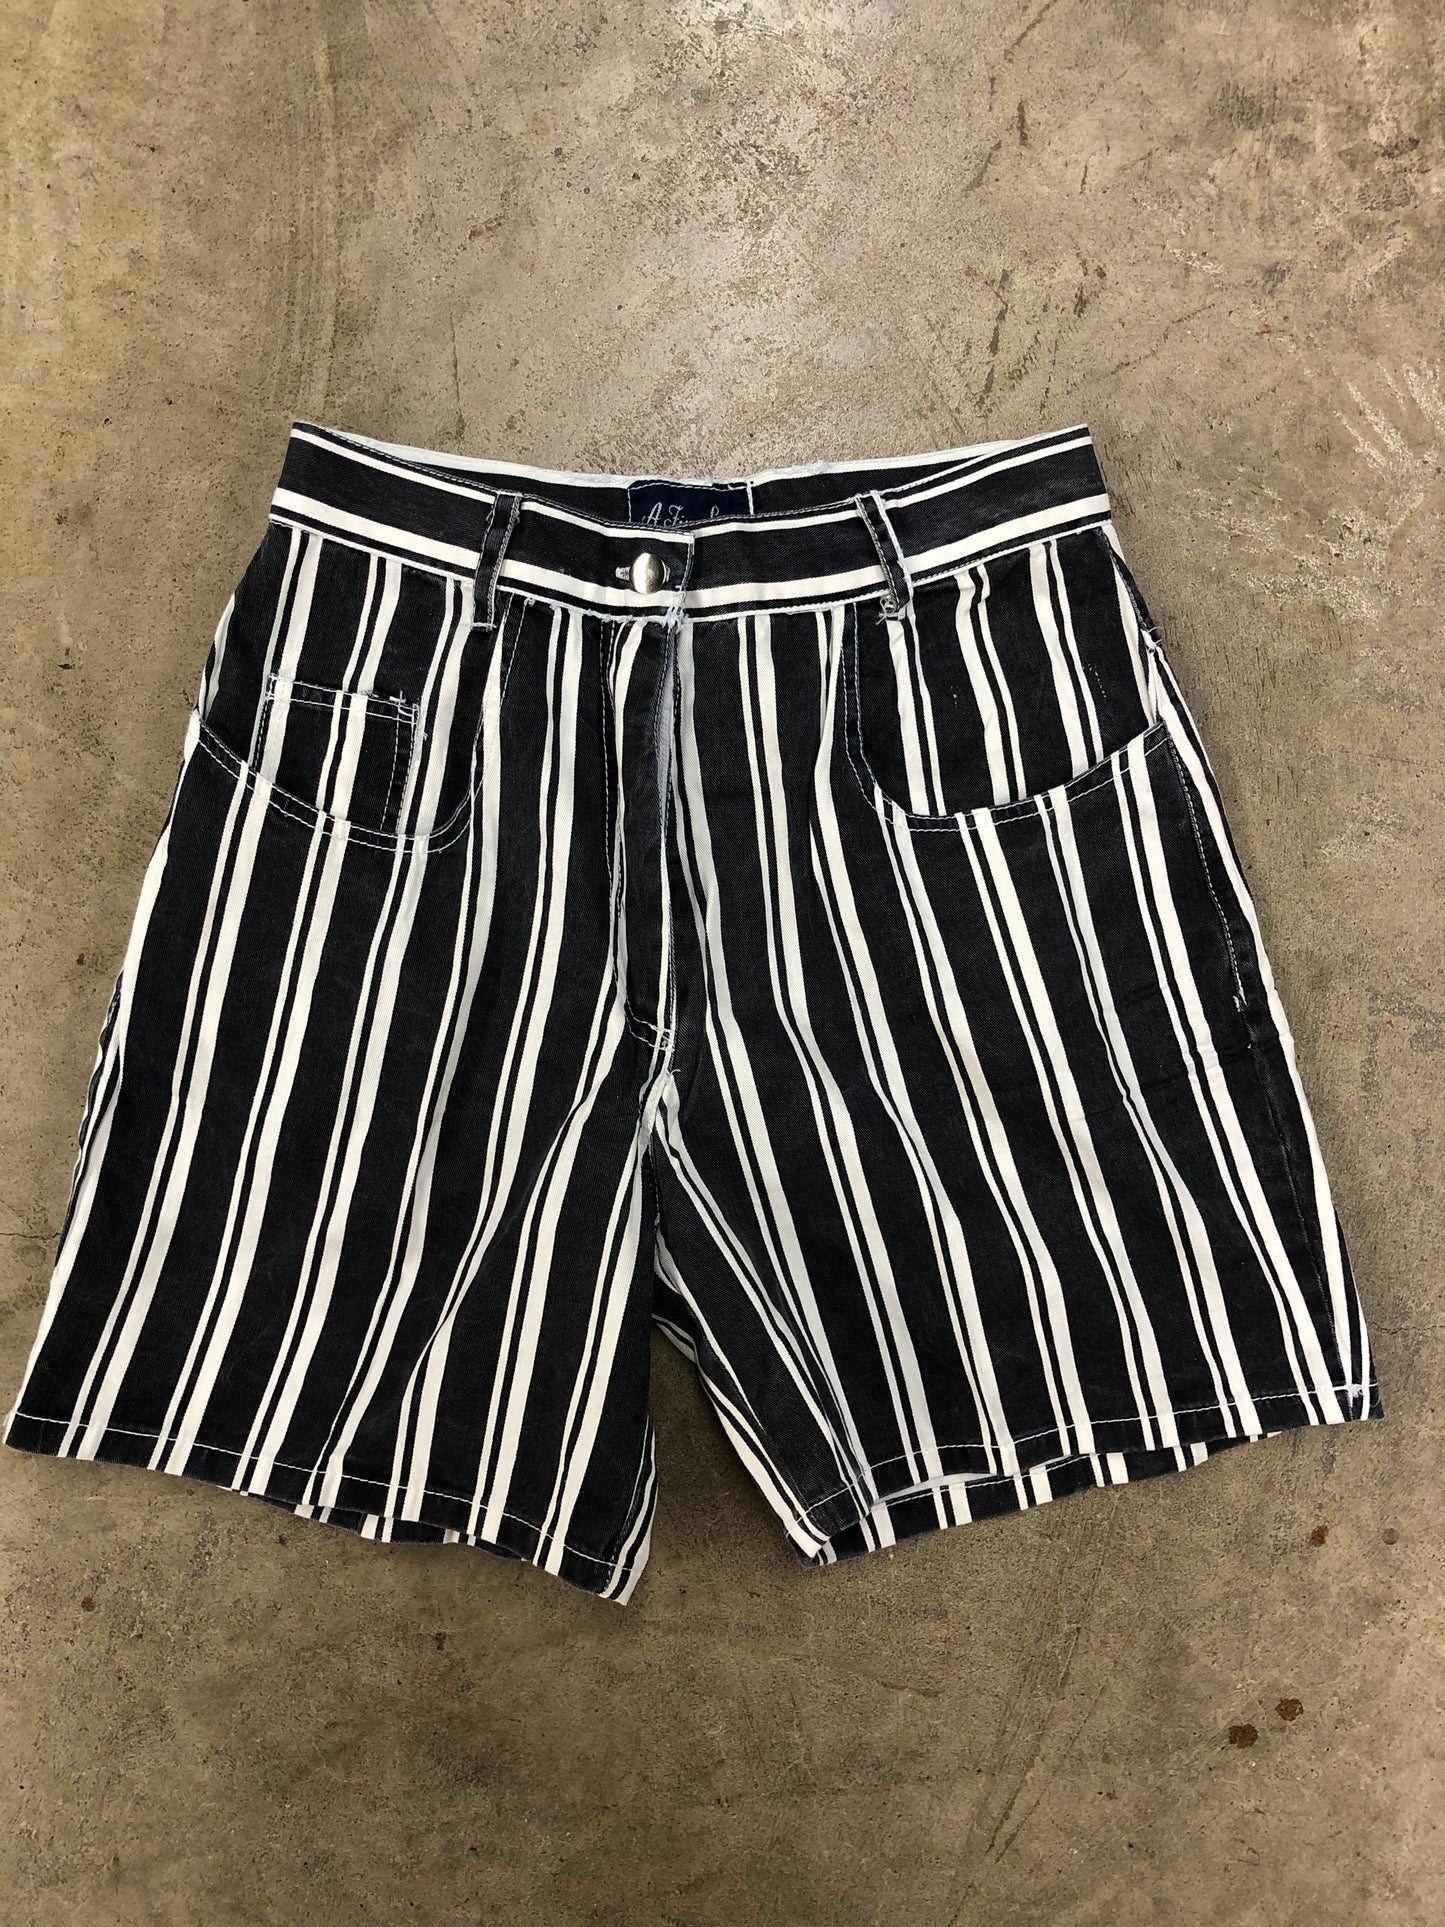 VTG A Fine Line Stripe Shorts Sz 28x6